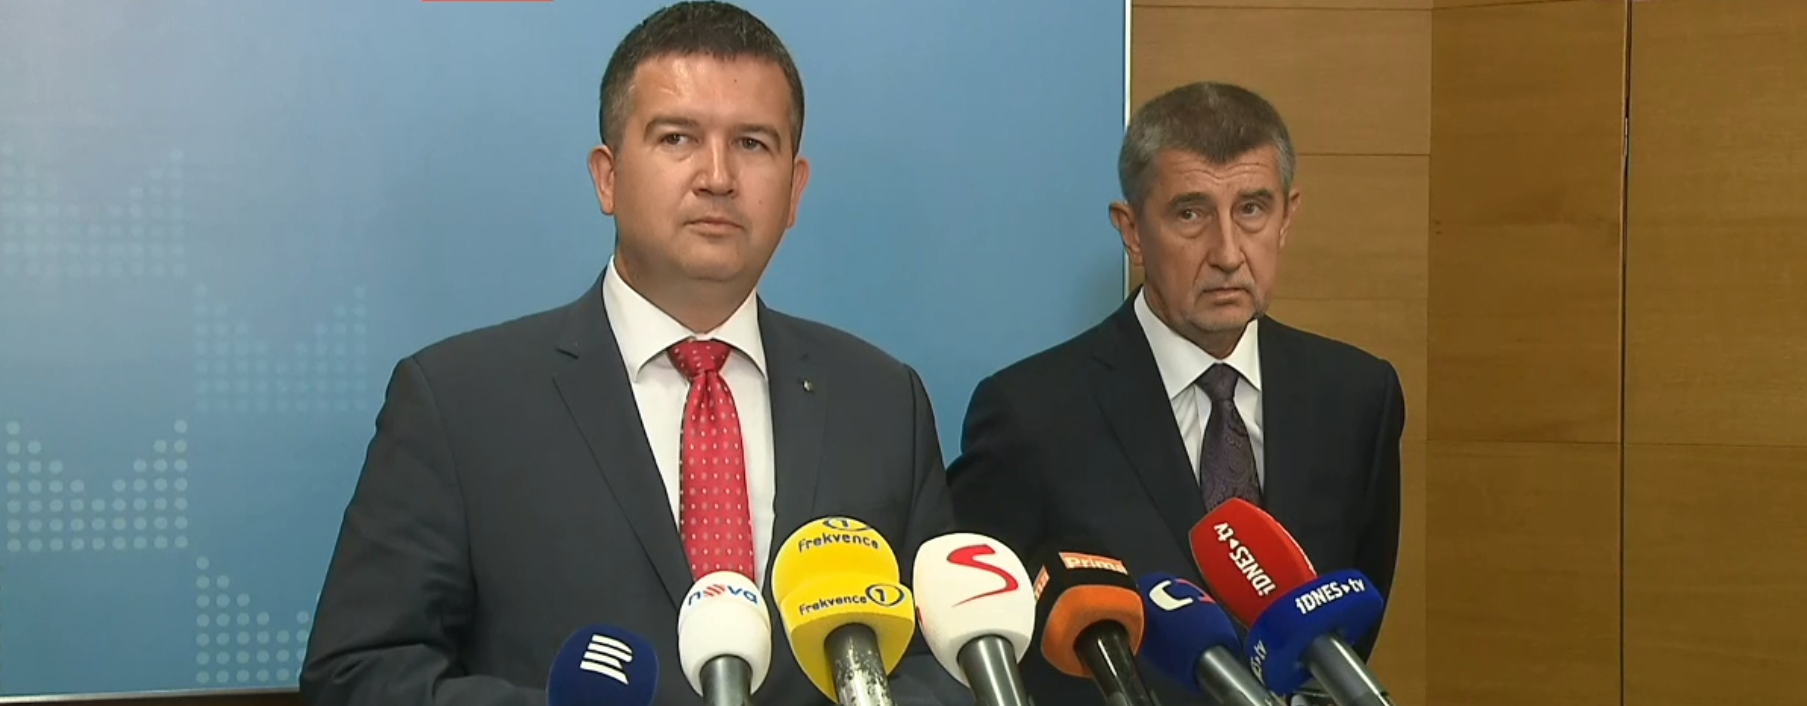 Premiér Andrej Babiš z hnutí ANO a ministr vnitra Jan Hamáček z ČSSD.